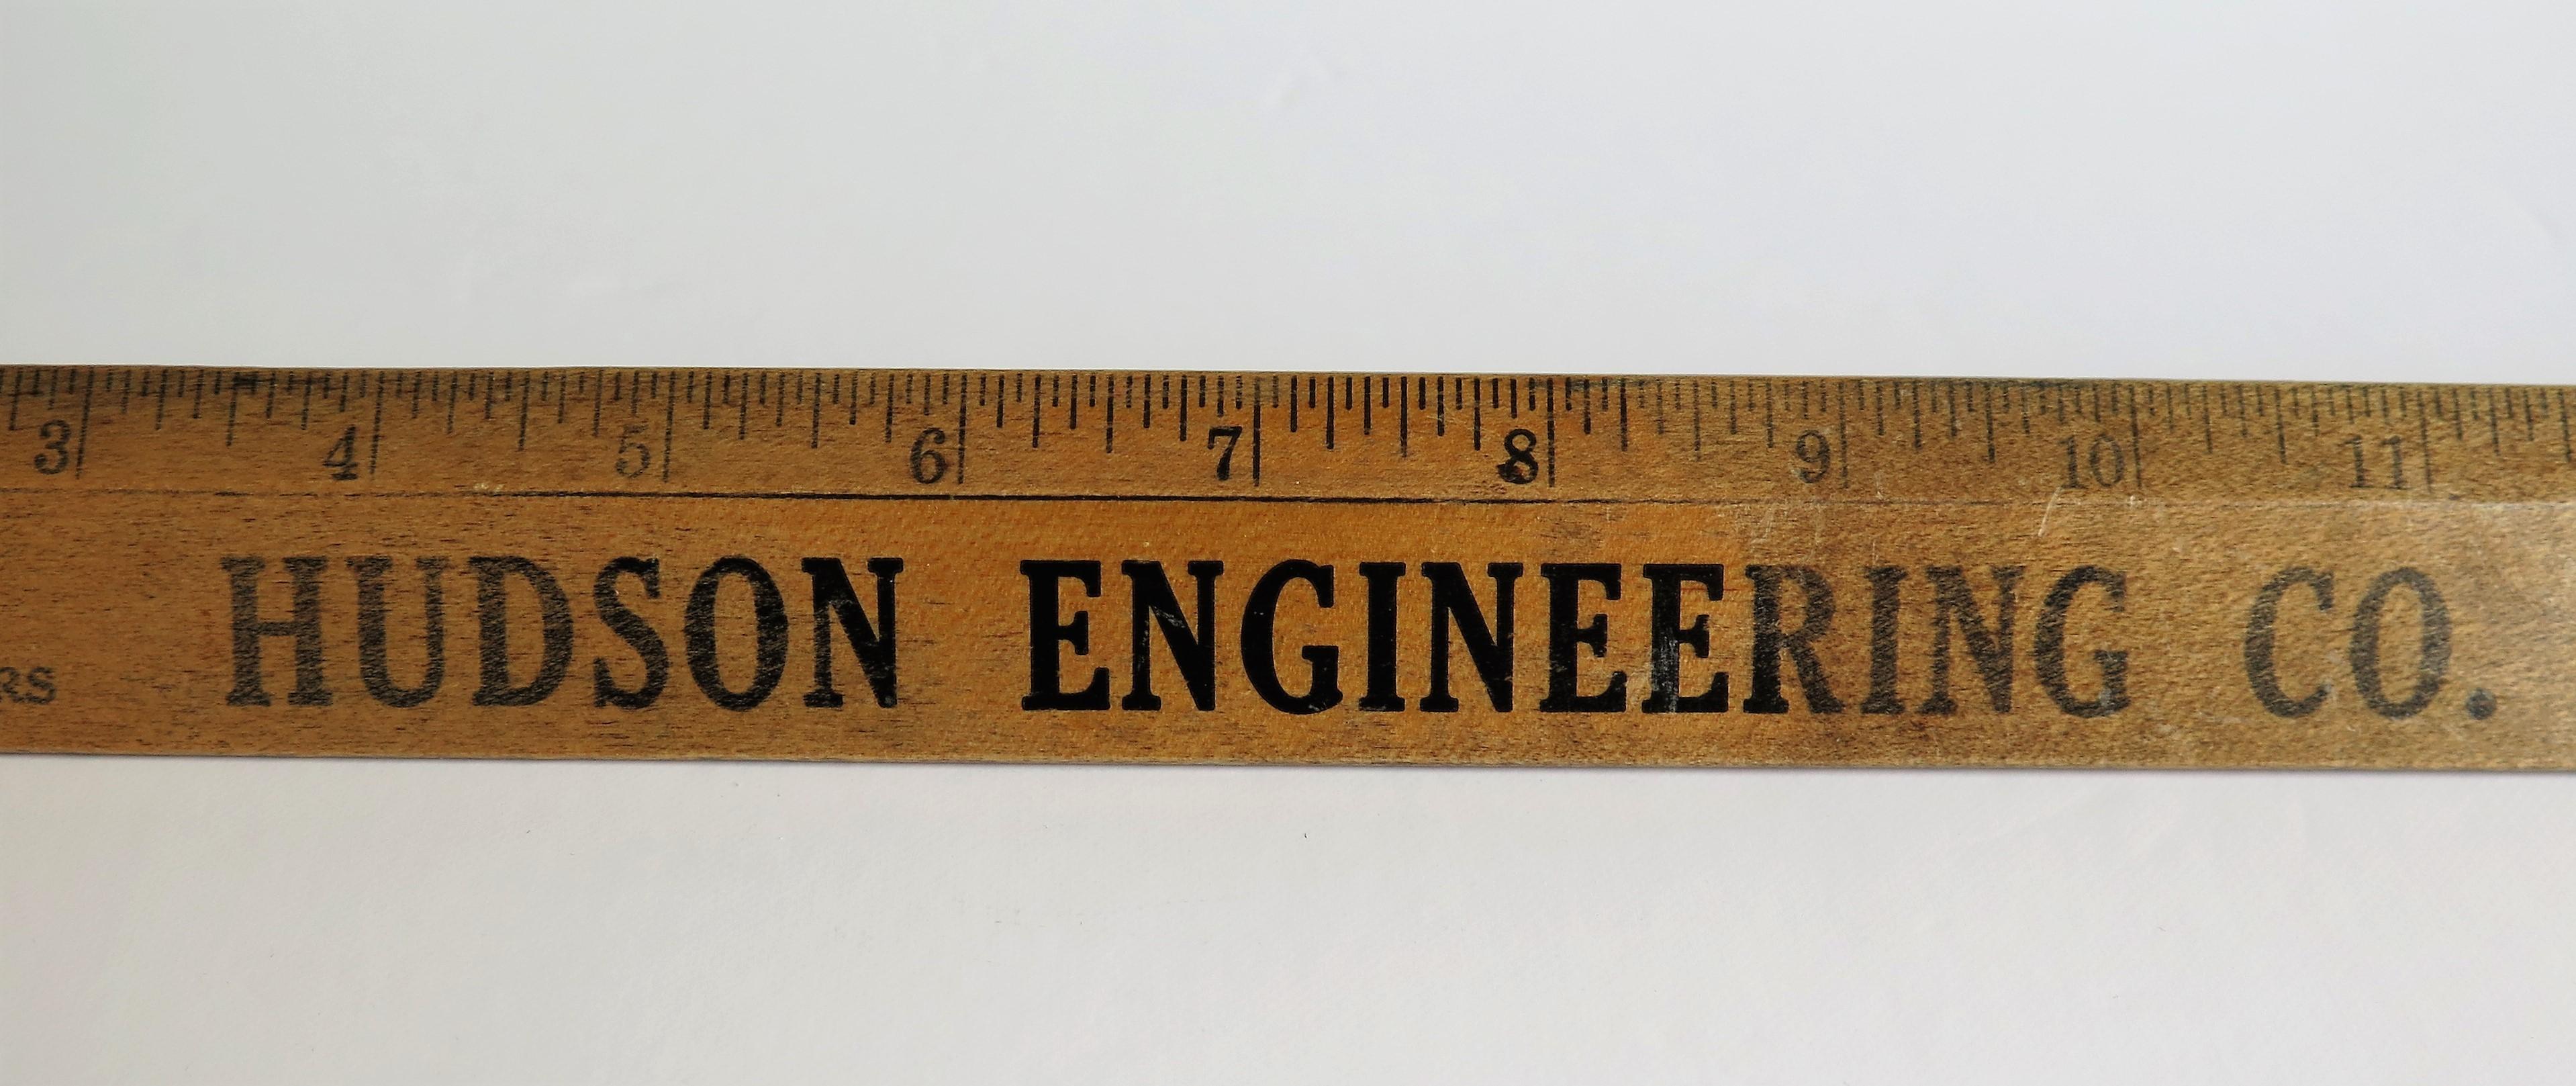 Hardwood Ruler for Hudson Engineering NJ by Geiger Bros Newark US, Ca 1920 For Sale 1